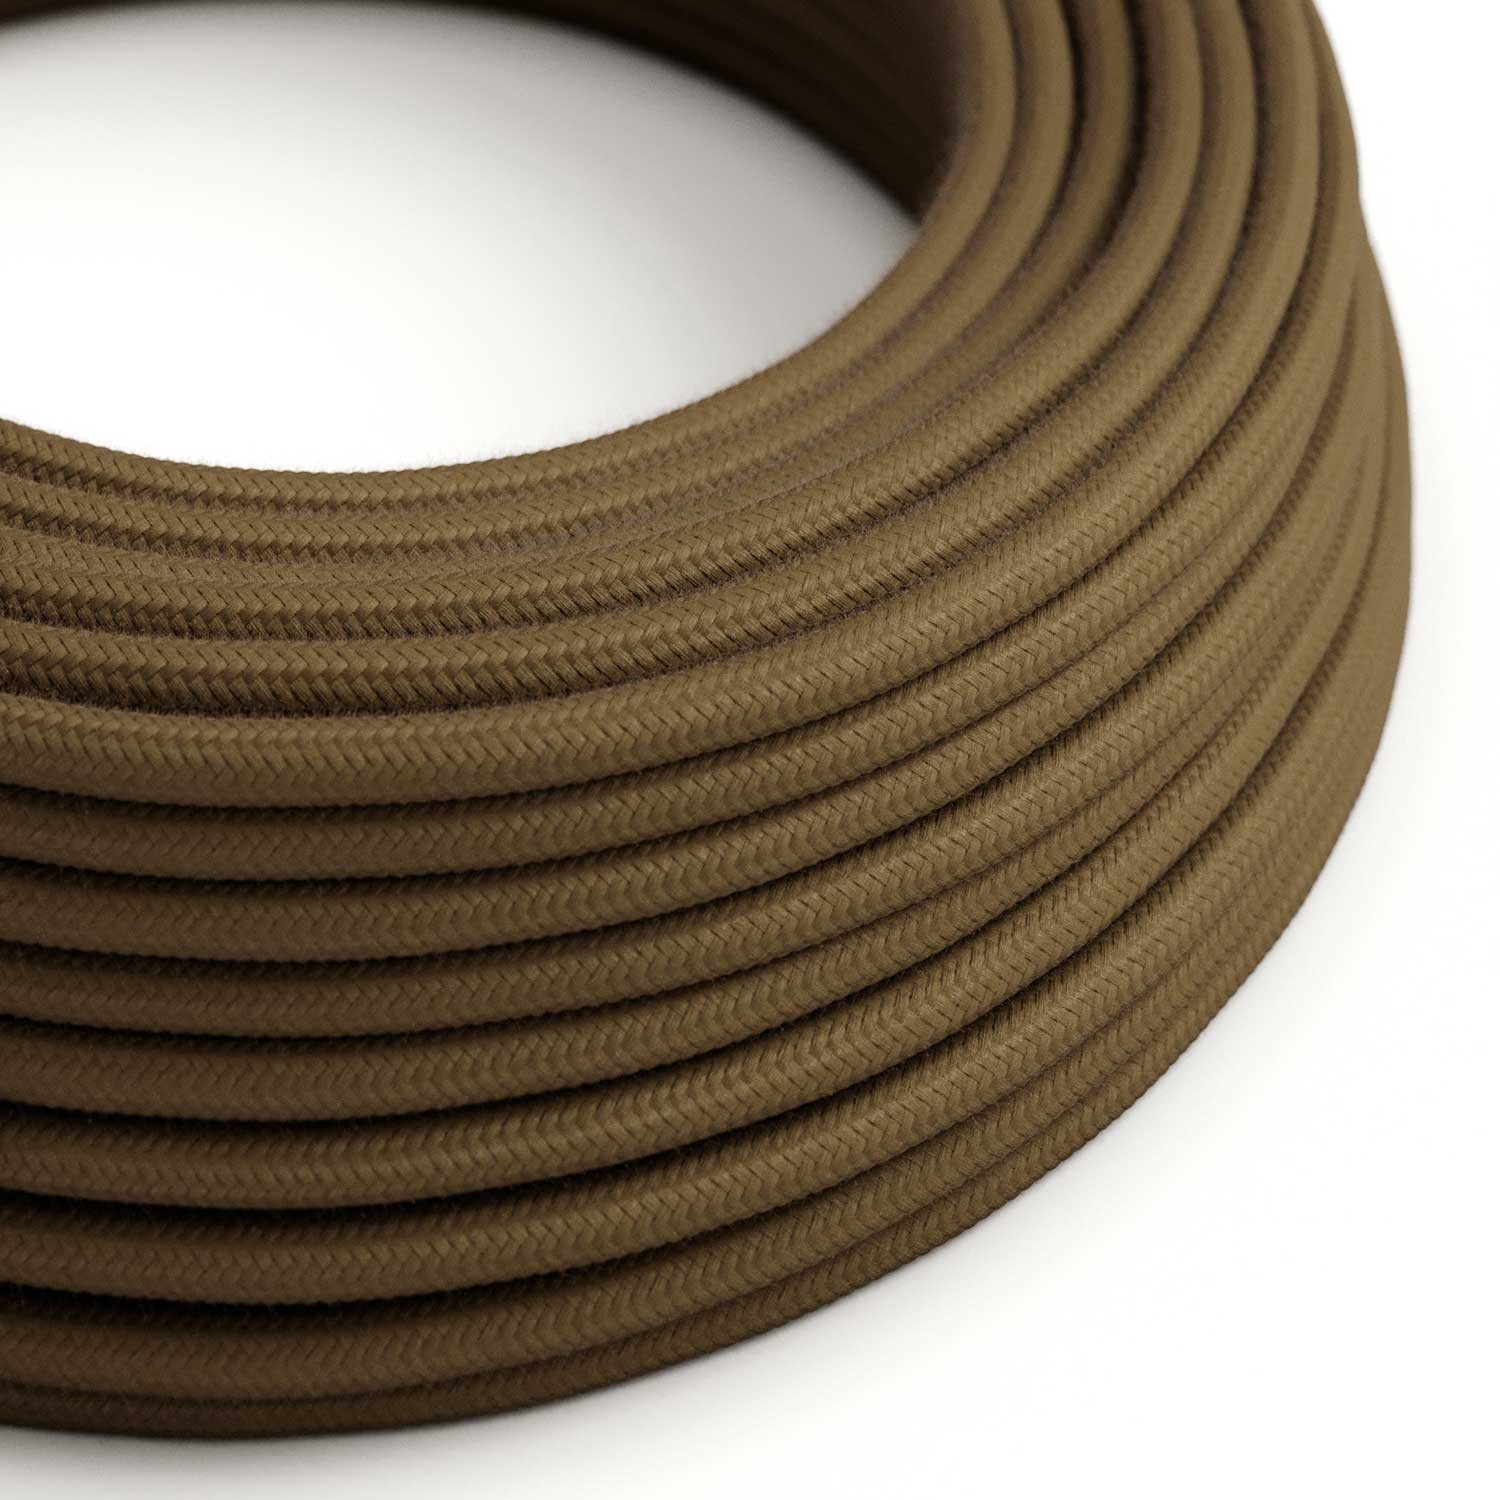 Câble textile Marron Espresso coton - L'Original Creative-Cables - RC13 rond 2x0,75mm / 3x0,75mm